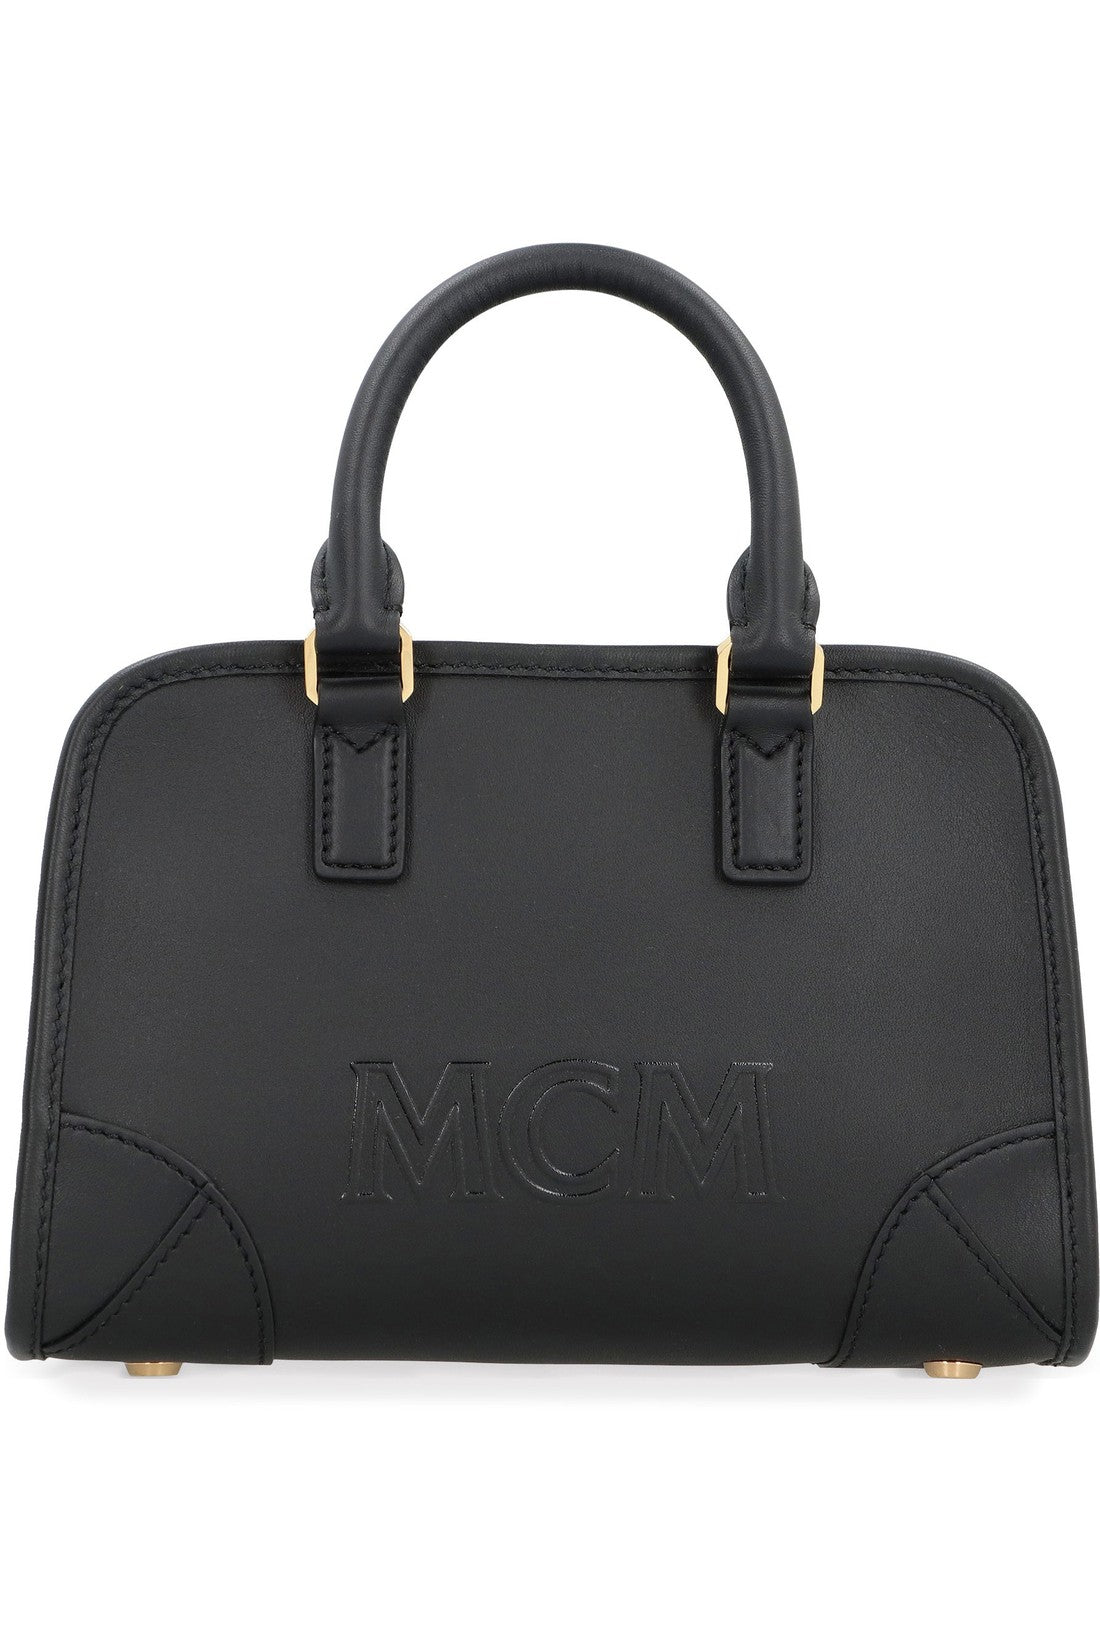 MCM-OUTLET-SALE-Boston leather mini bag-ARCHIVIST